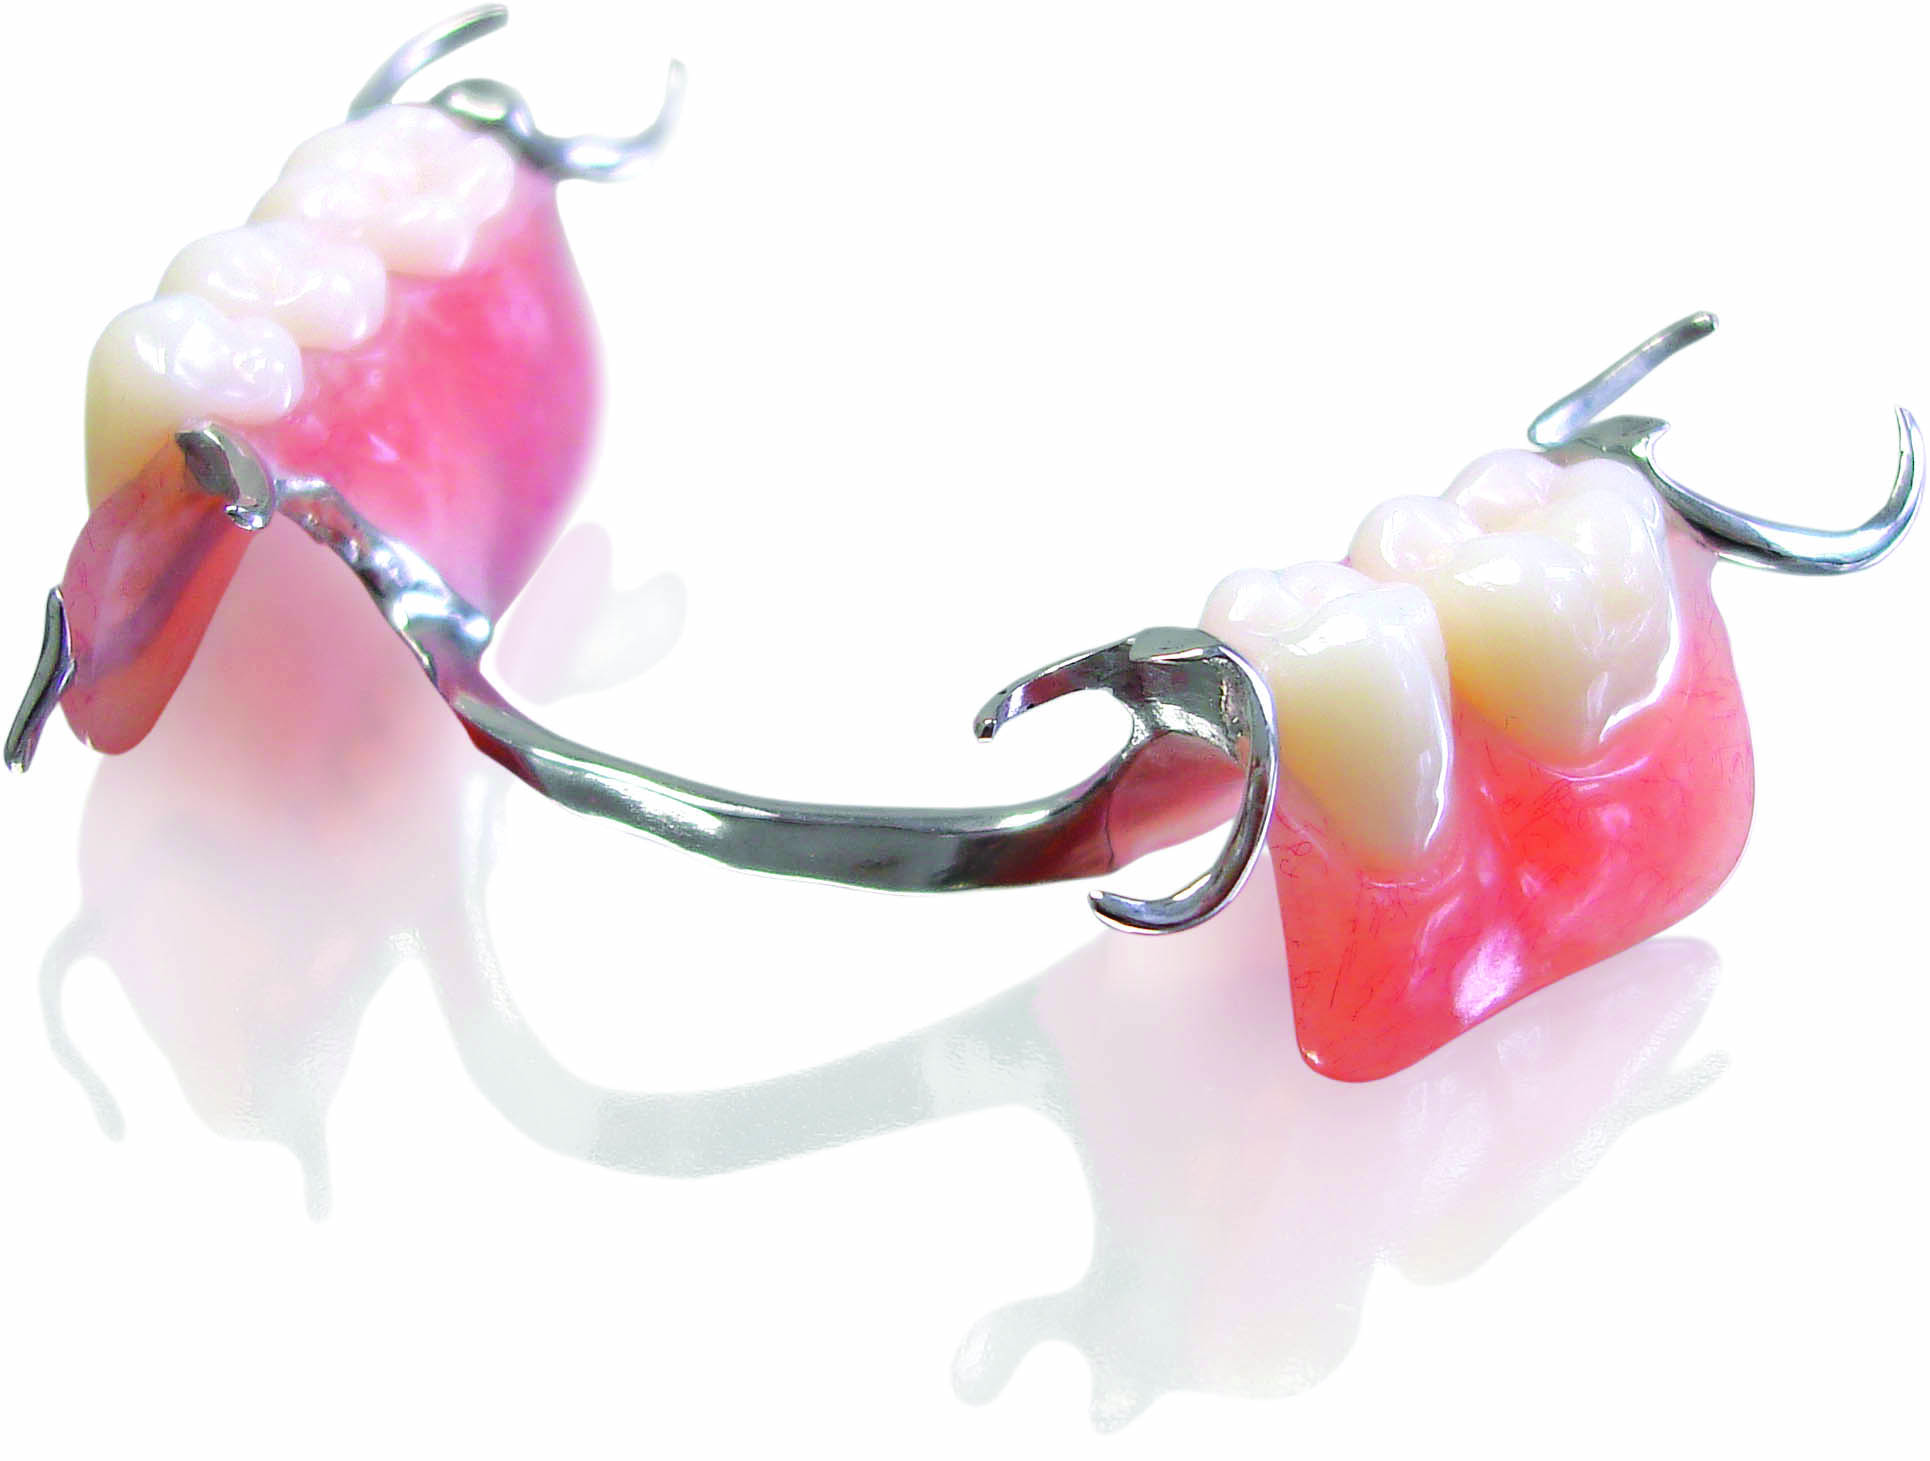 affordable-dentures-in-roseville-california-ace-dental